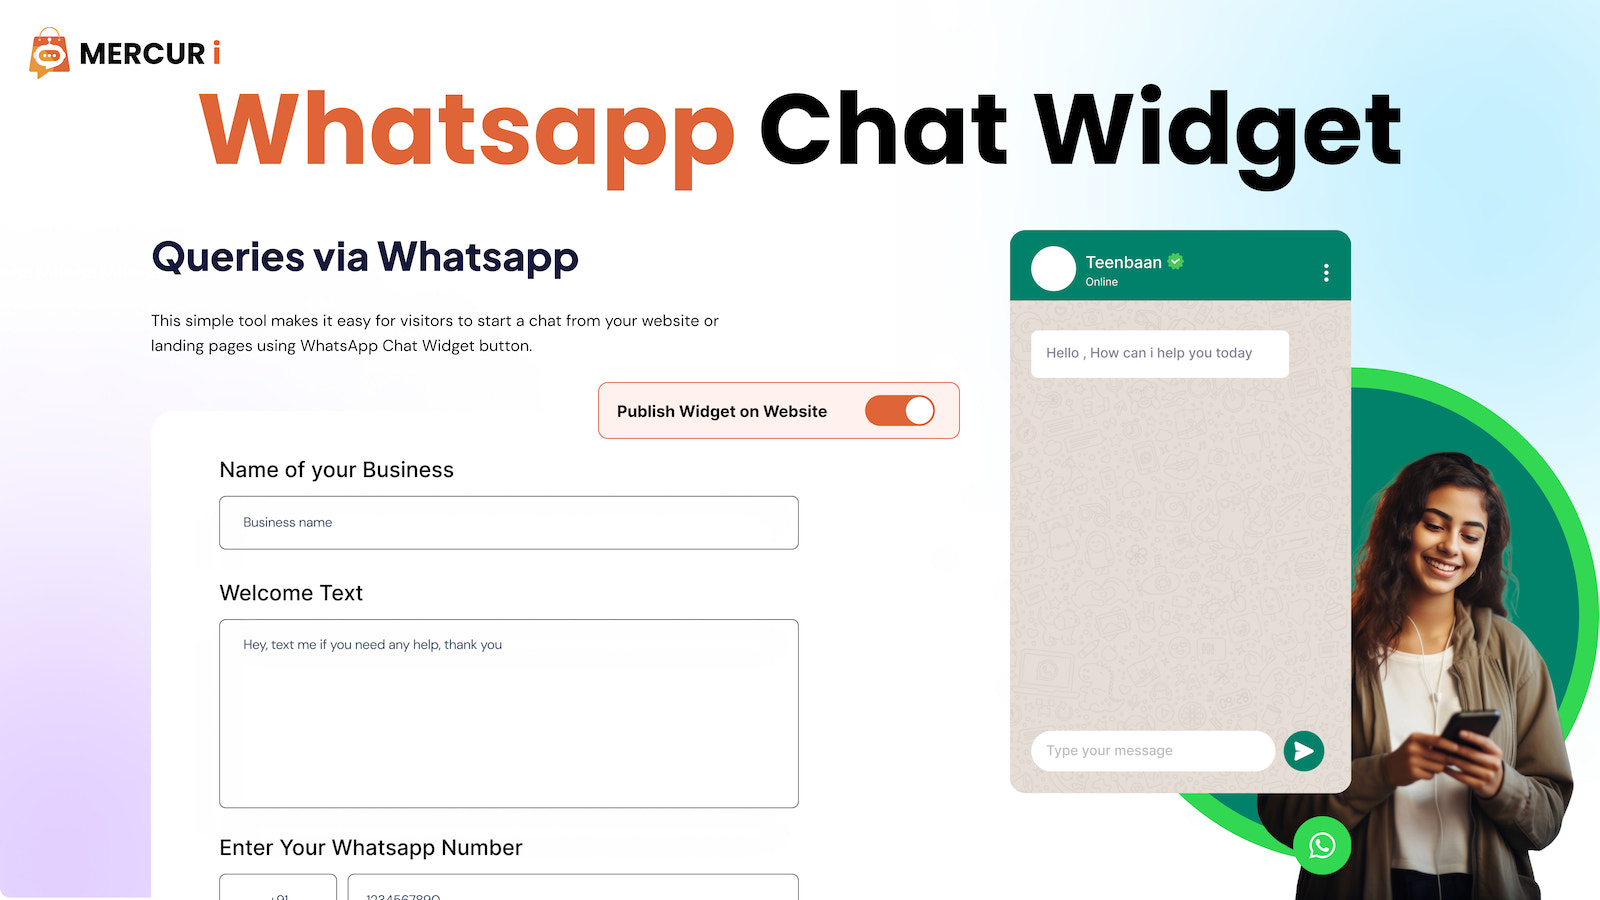 Mercuri WhatsApp Chat Widget